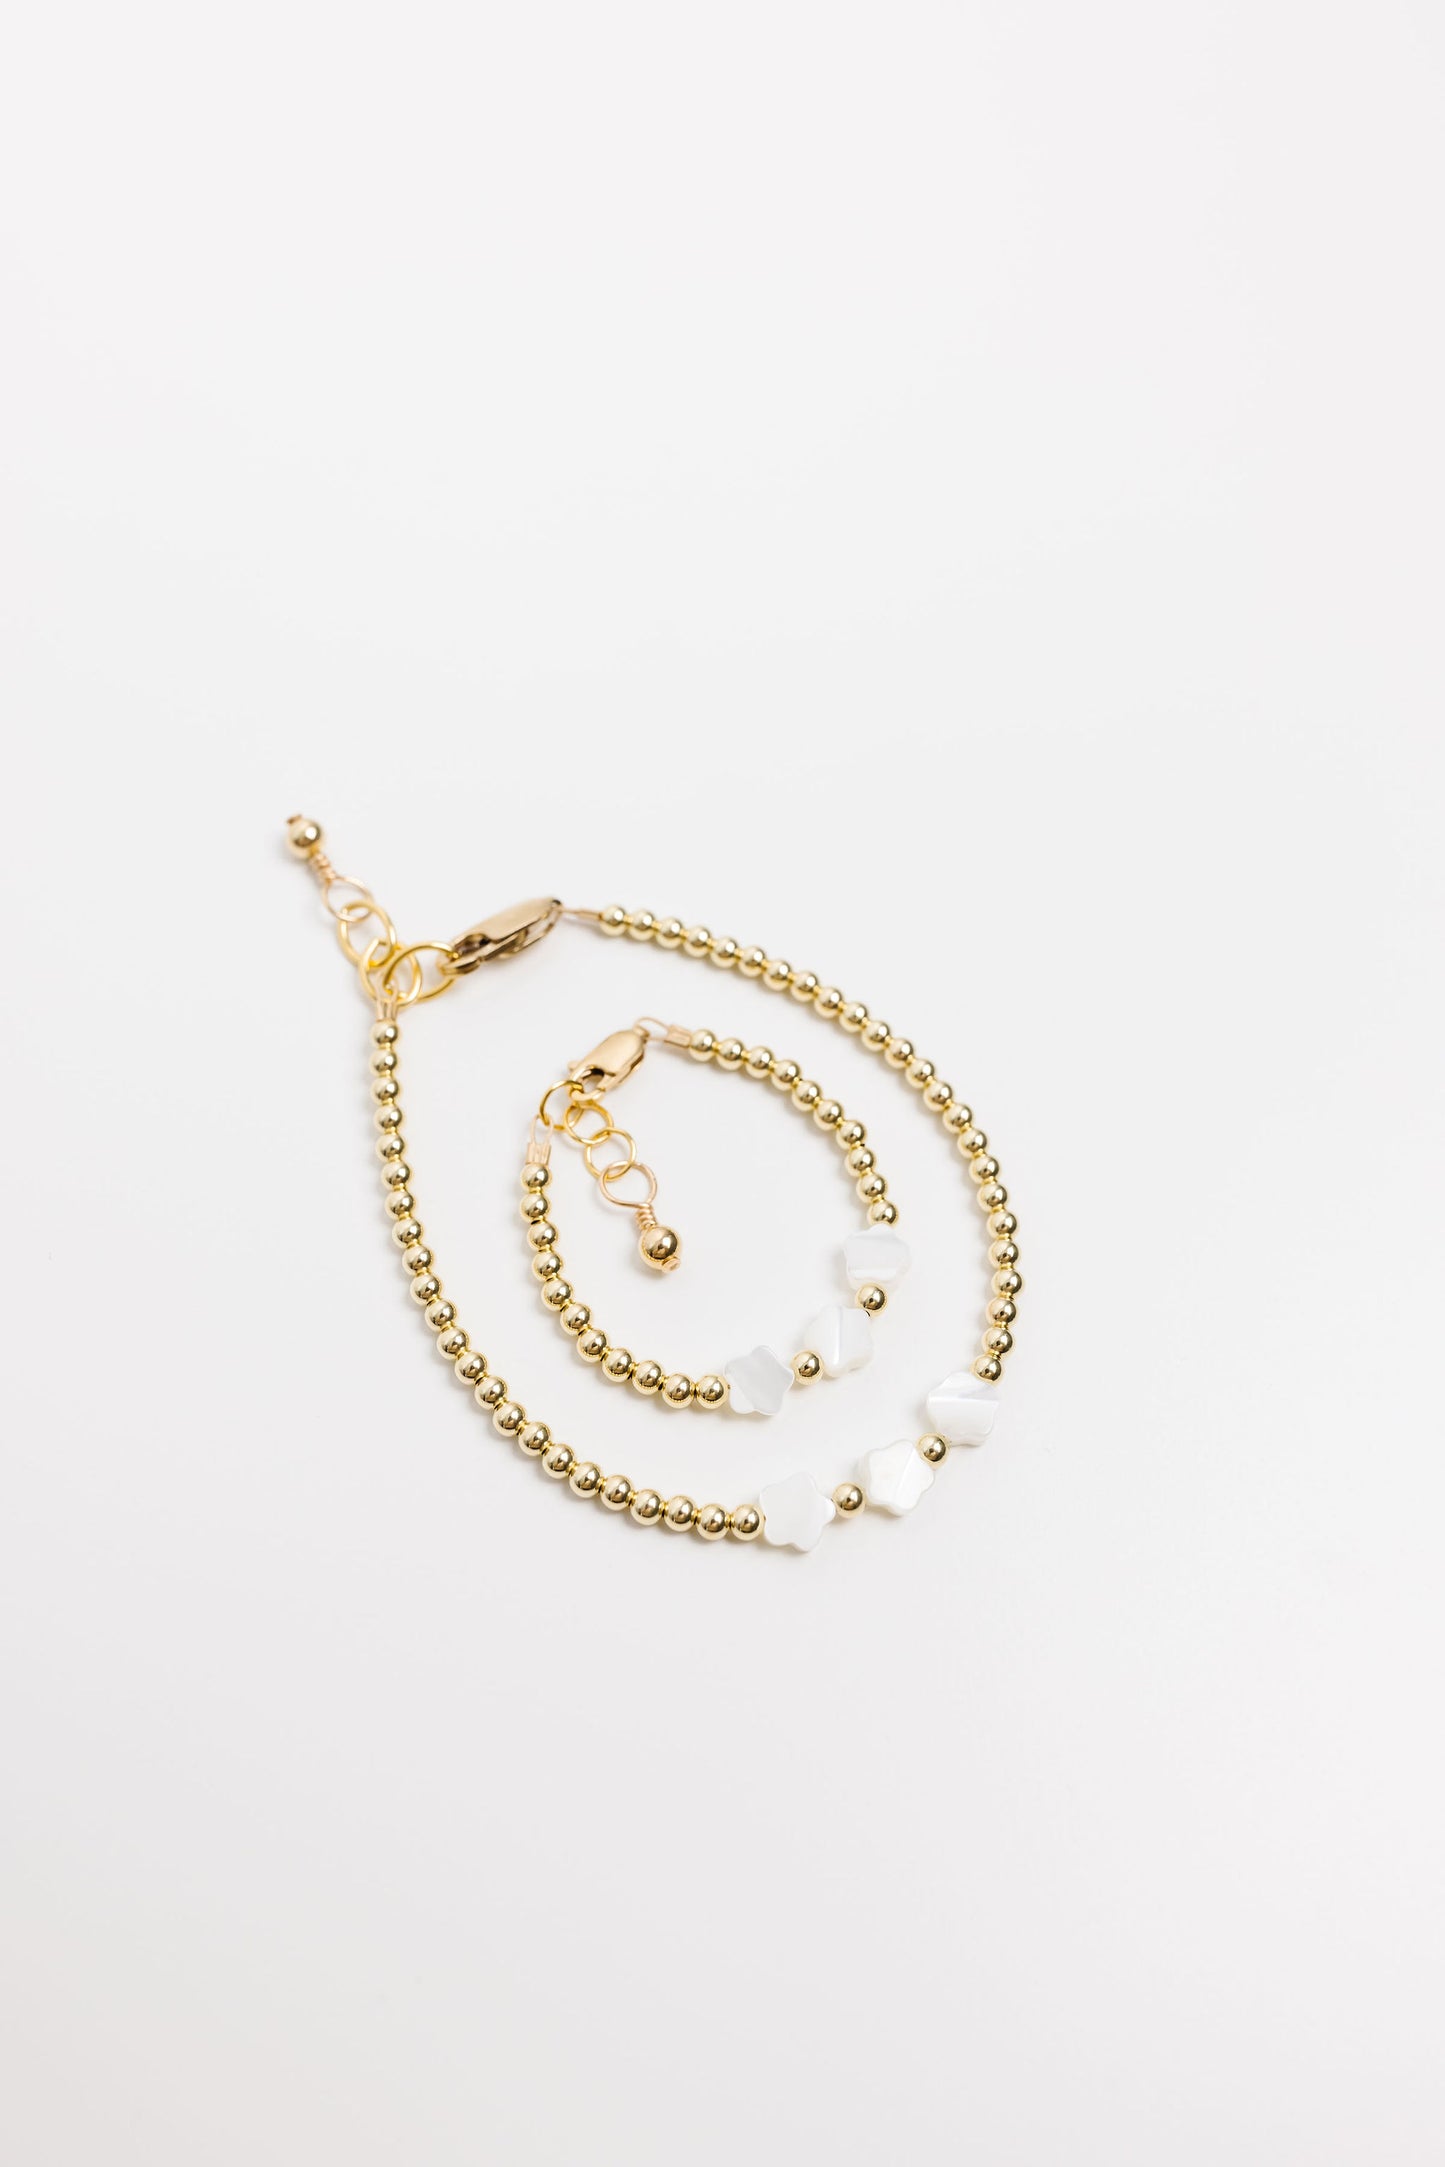 Edelweiss Baby Bracelet (3MM + 6MM Beads)